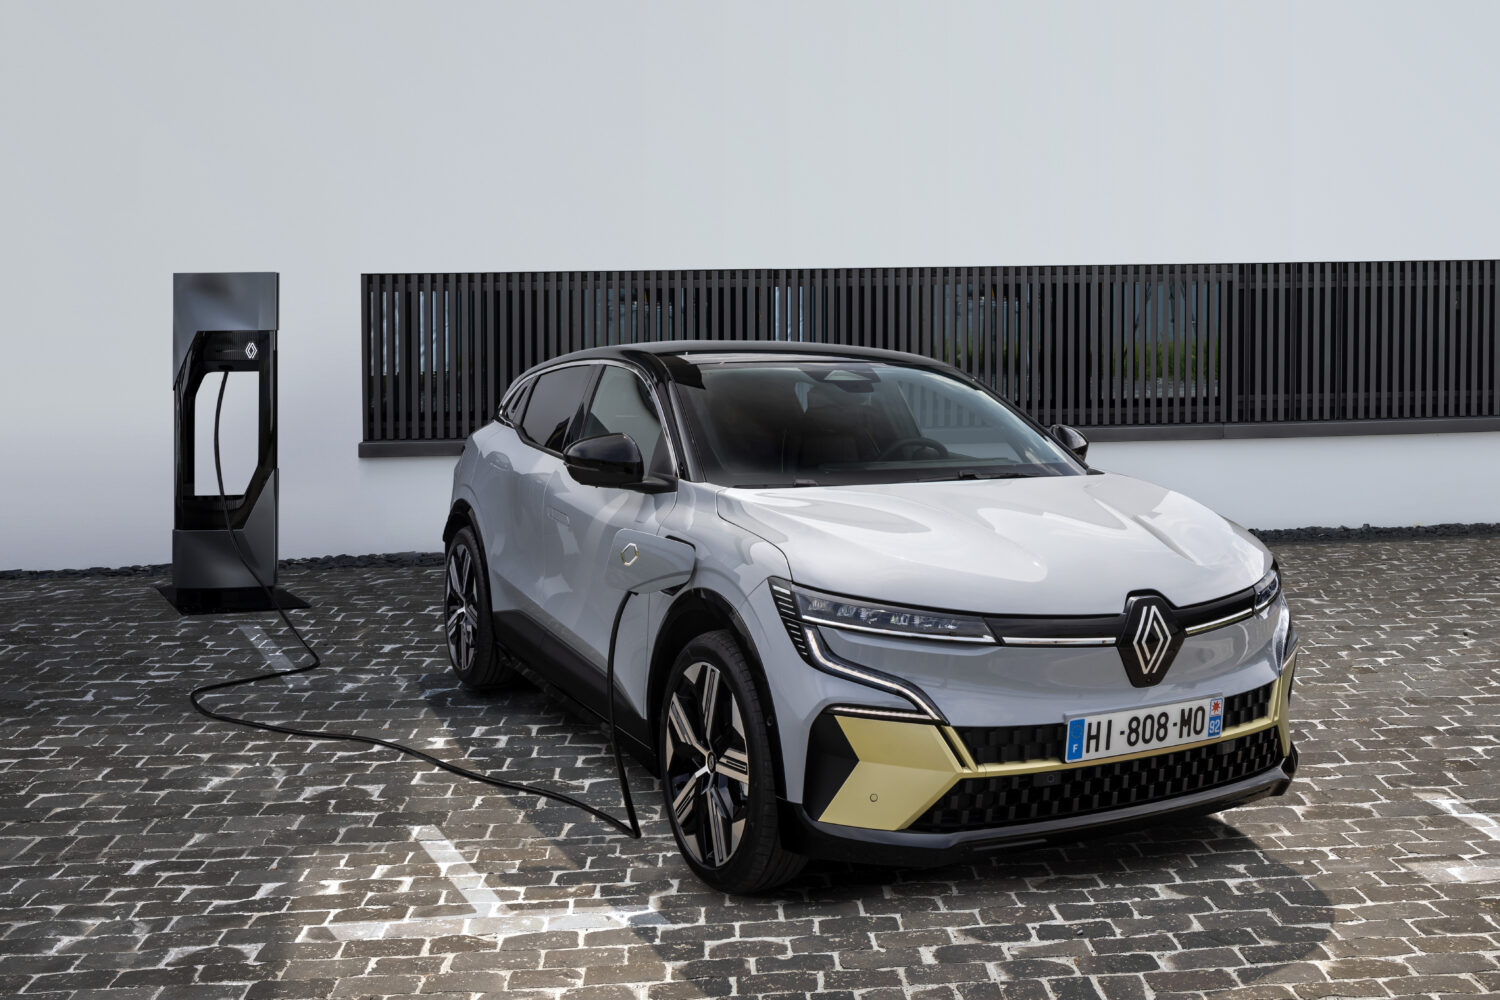 2021 - New Renault Mégane E-TECH Electric - Urban..jpeg